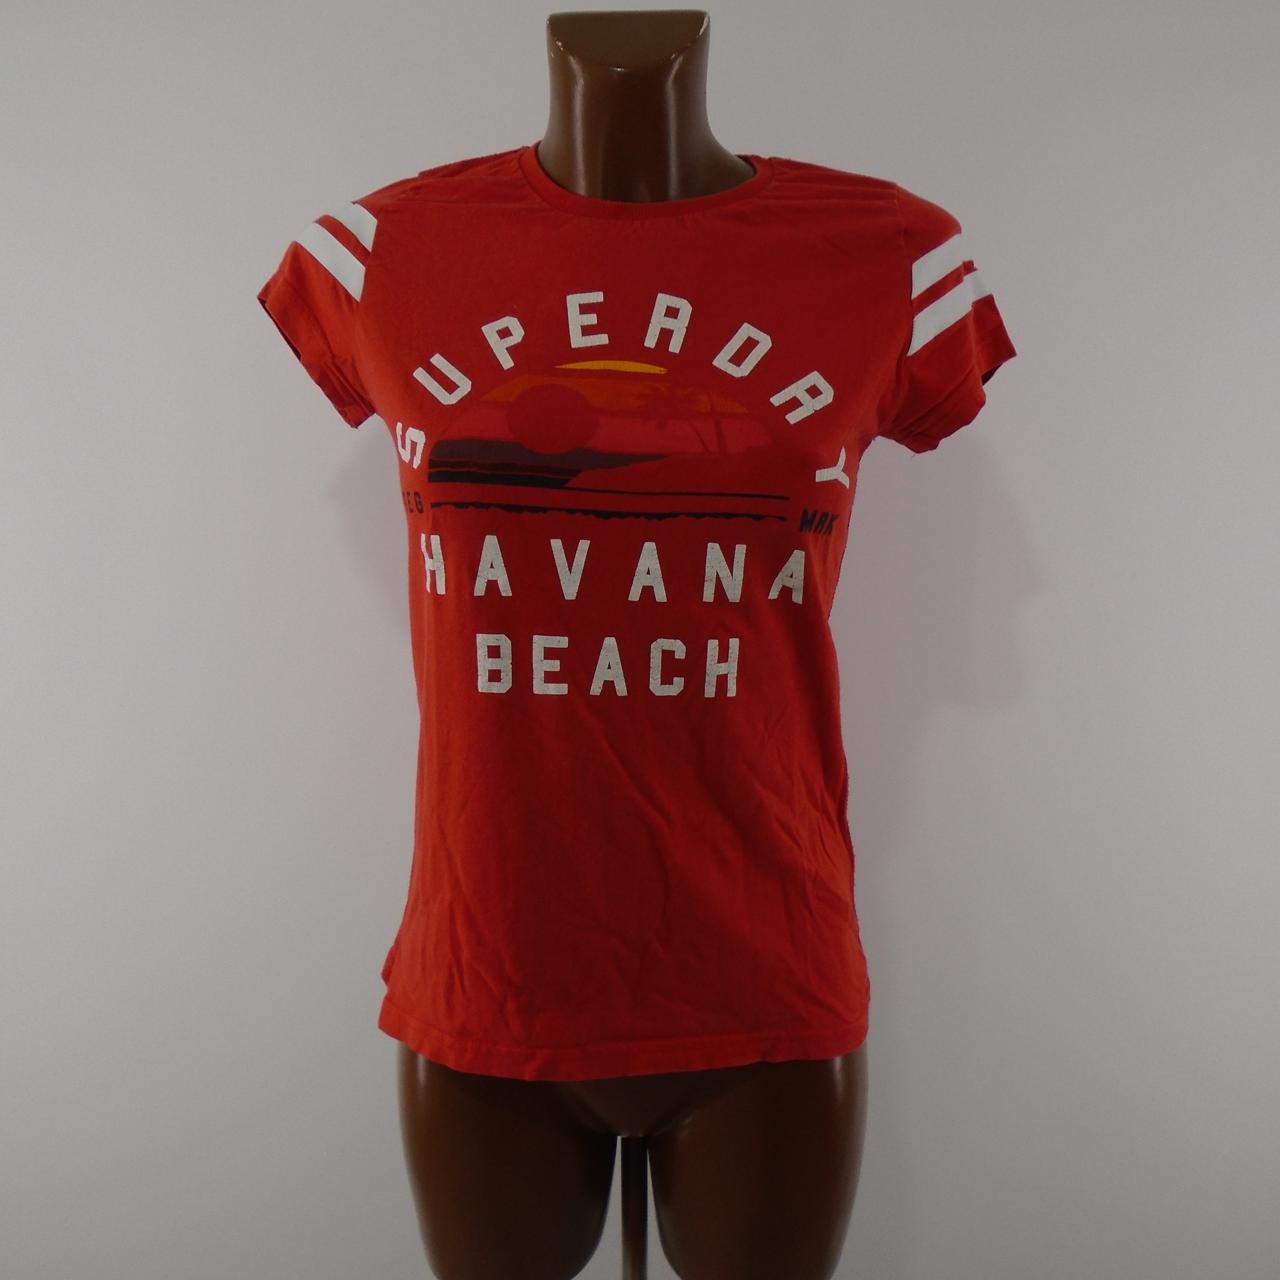 Damen-T-Shirt Superdry. Rot. M. Gebraucht. Gut